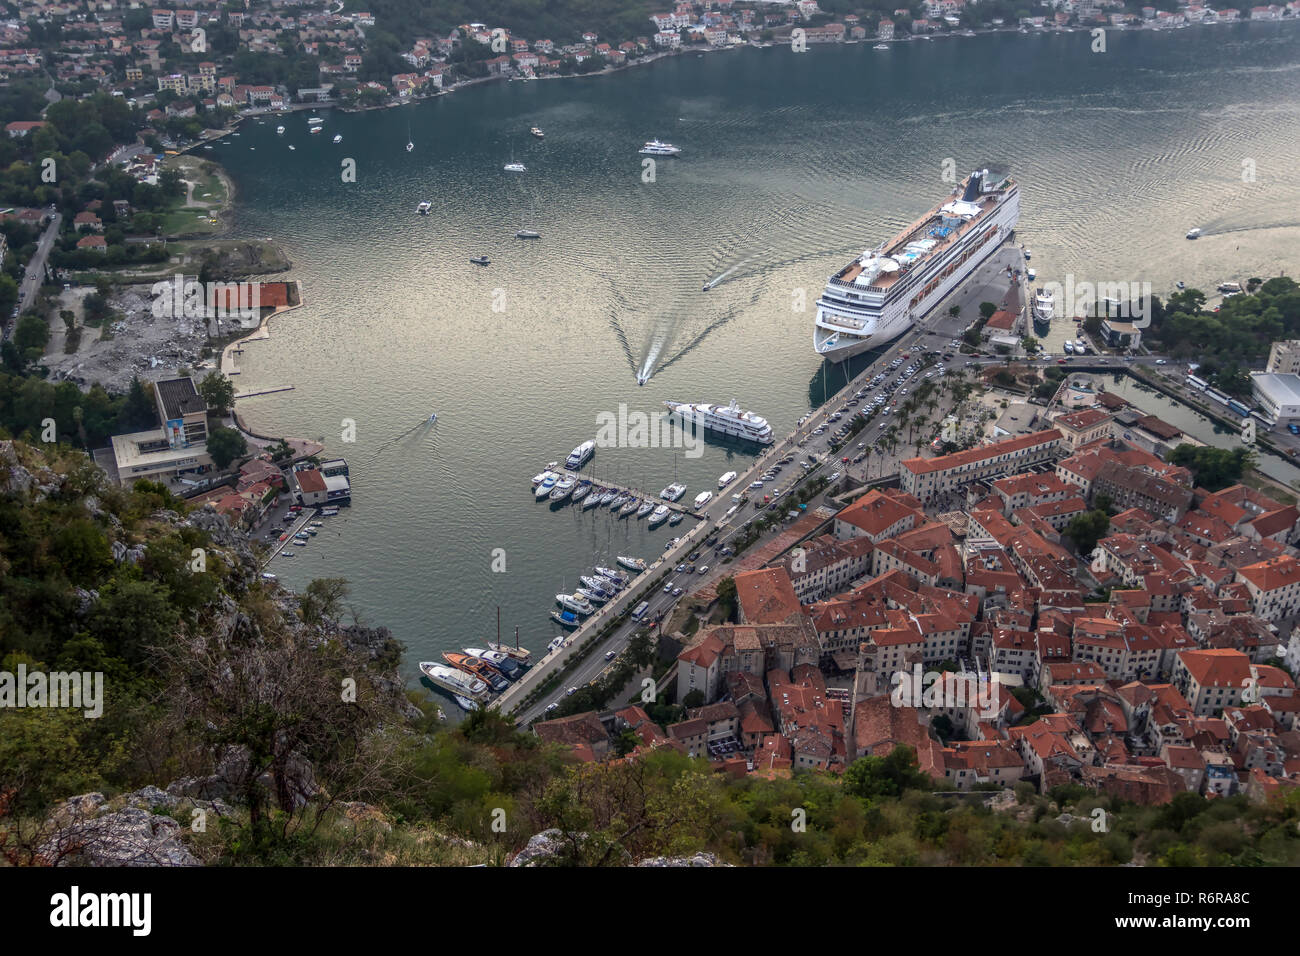 Bucht von Kotor, Montenegro - Panoramablick auf die Stadt und die Bucht von Kotor mit gleichen Namen von einem der umliegenden Hügel in der Dämmerung Stockfoto